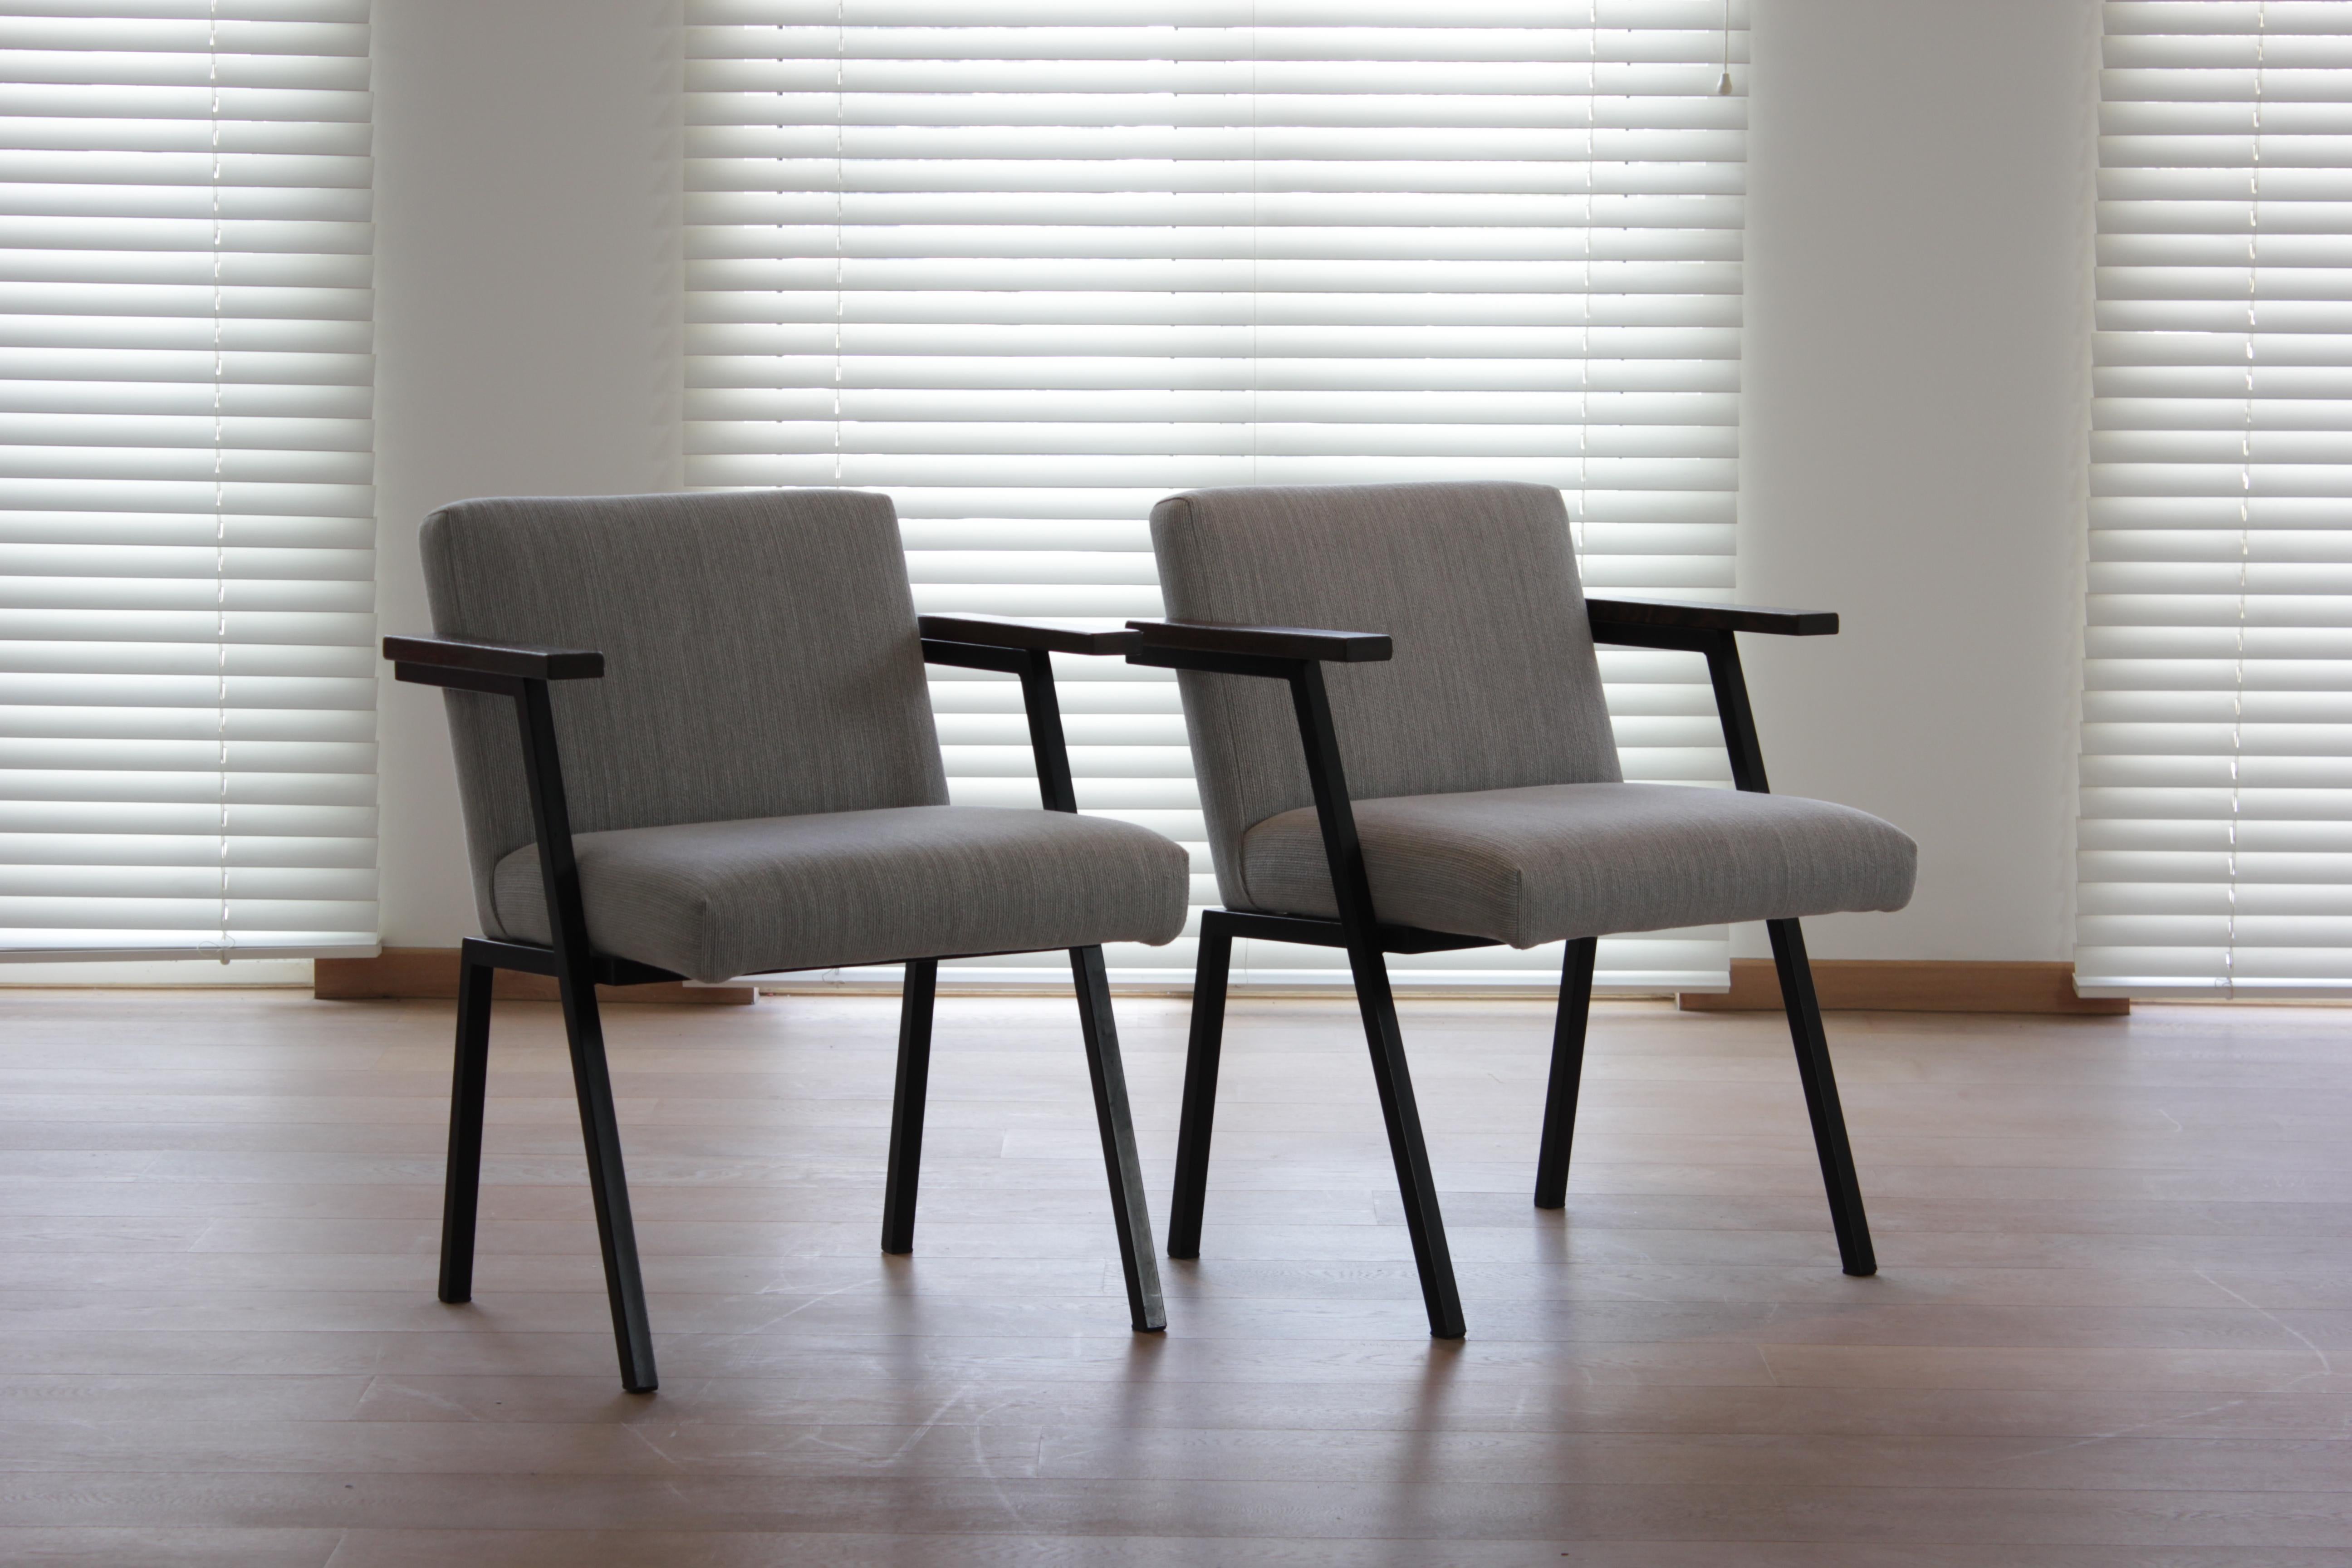 Ein Paar Sessel von Martin Visser für 't Spectrum

1960s

Niederlande

Metall und grau gepolstert

78 cm hoch, 64 cm breit, 57 cm tief, 